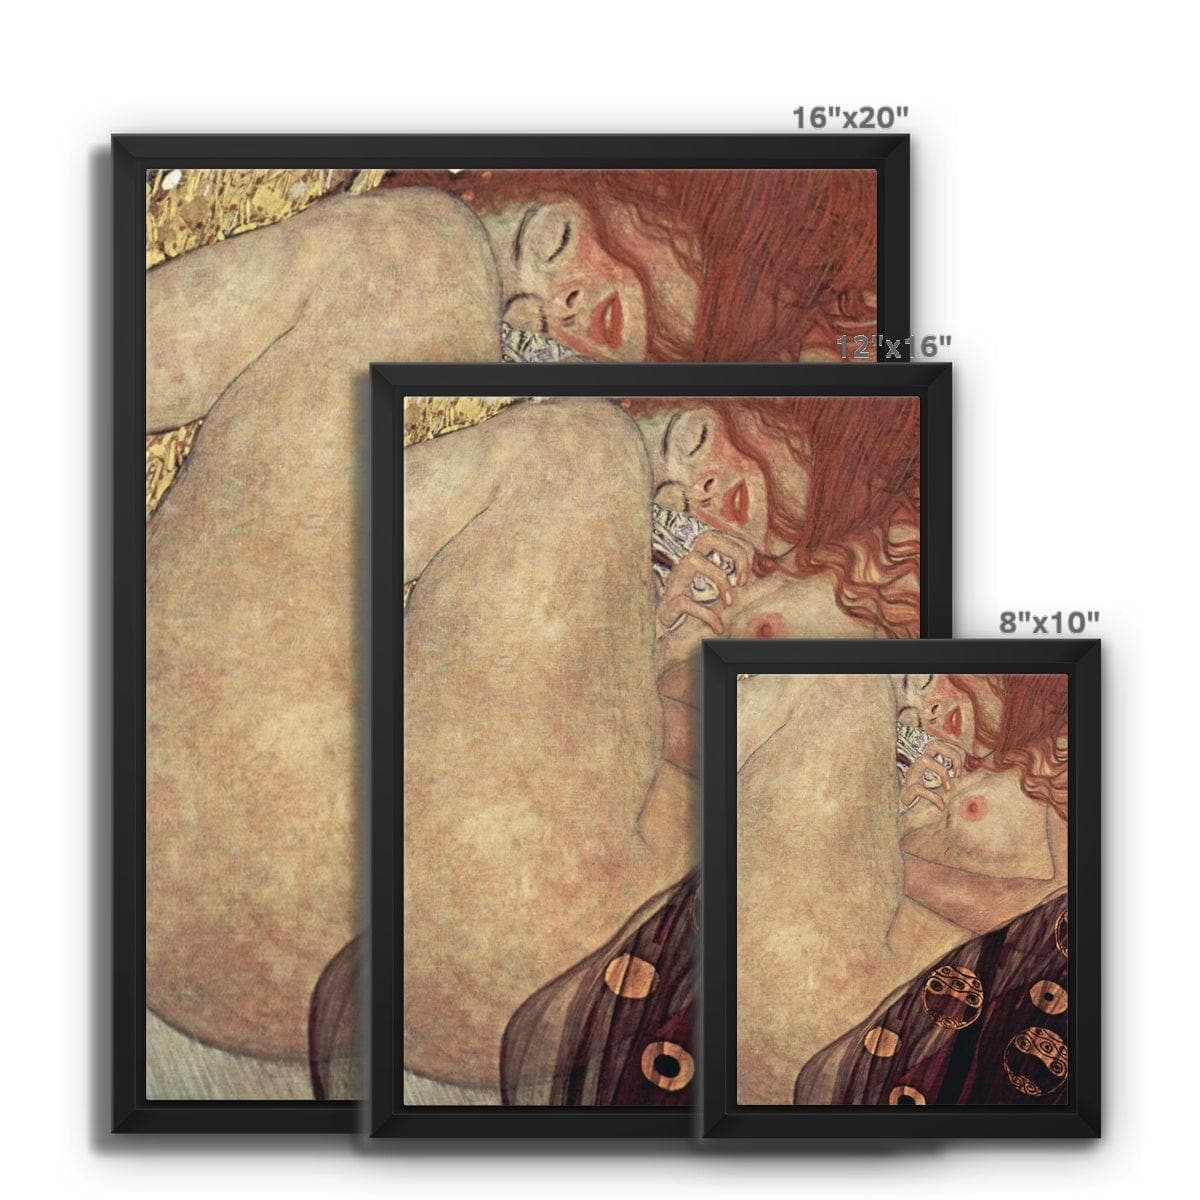 Gustav Klimt's Danae (1907-1908) Framed Canvas